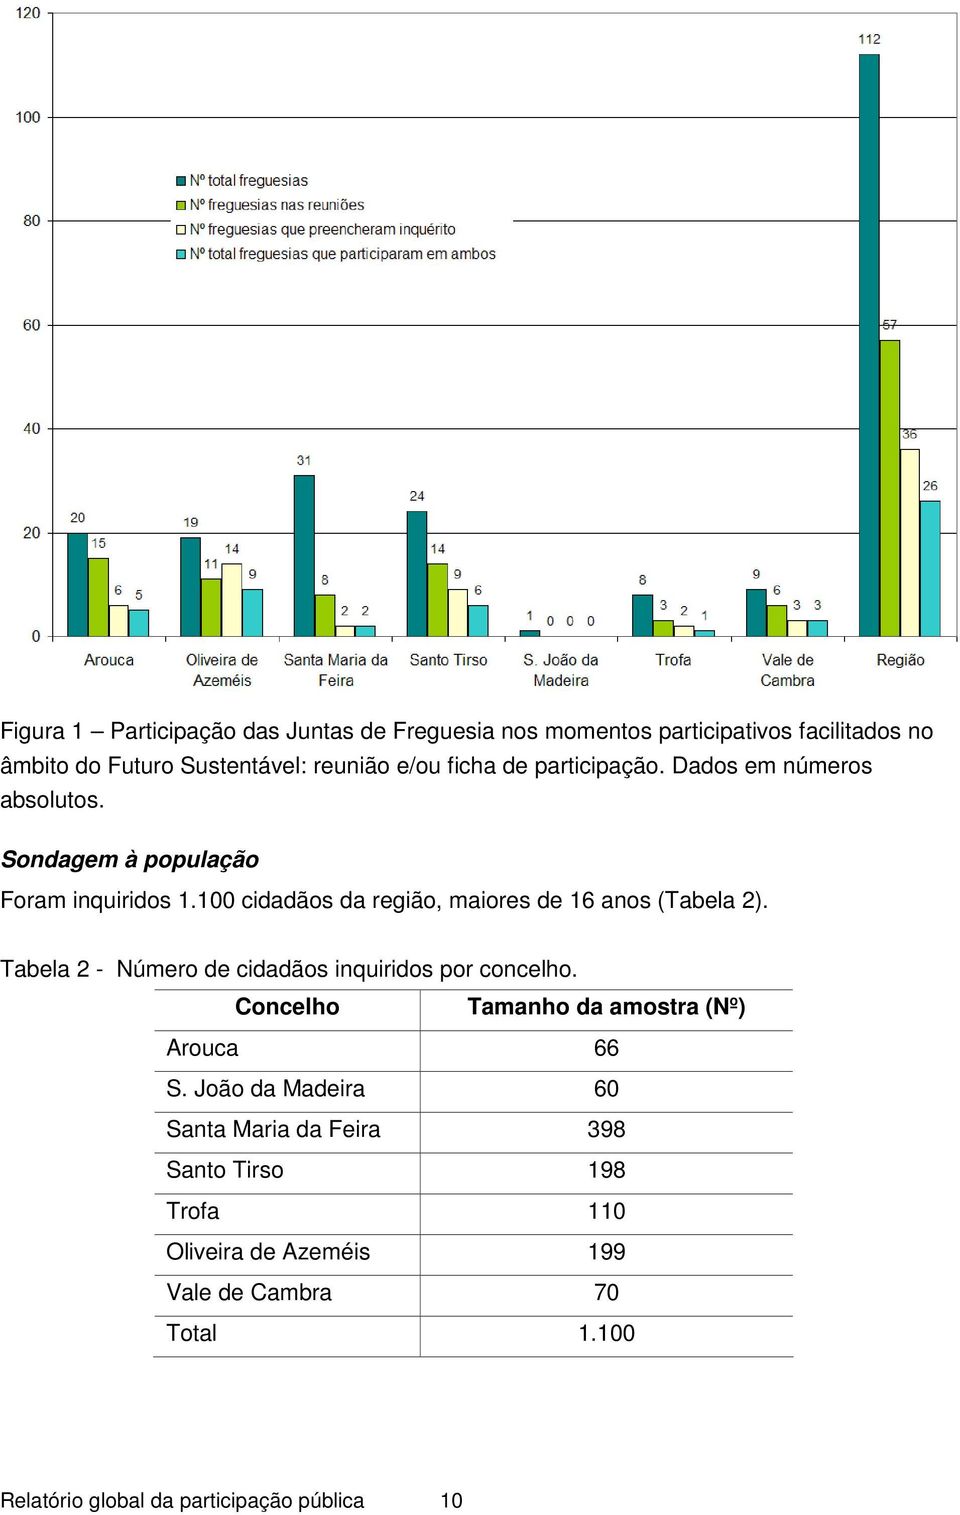 100 cidadãos da região, maiores de 16 anos (Tabela 2). Tabela 2 - Número de cidadãos inquiridos por concelho.